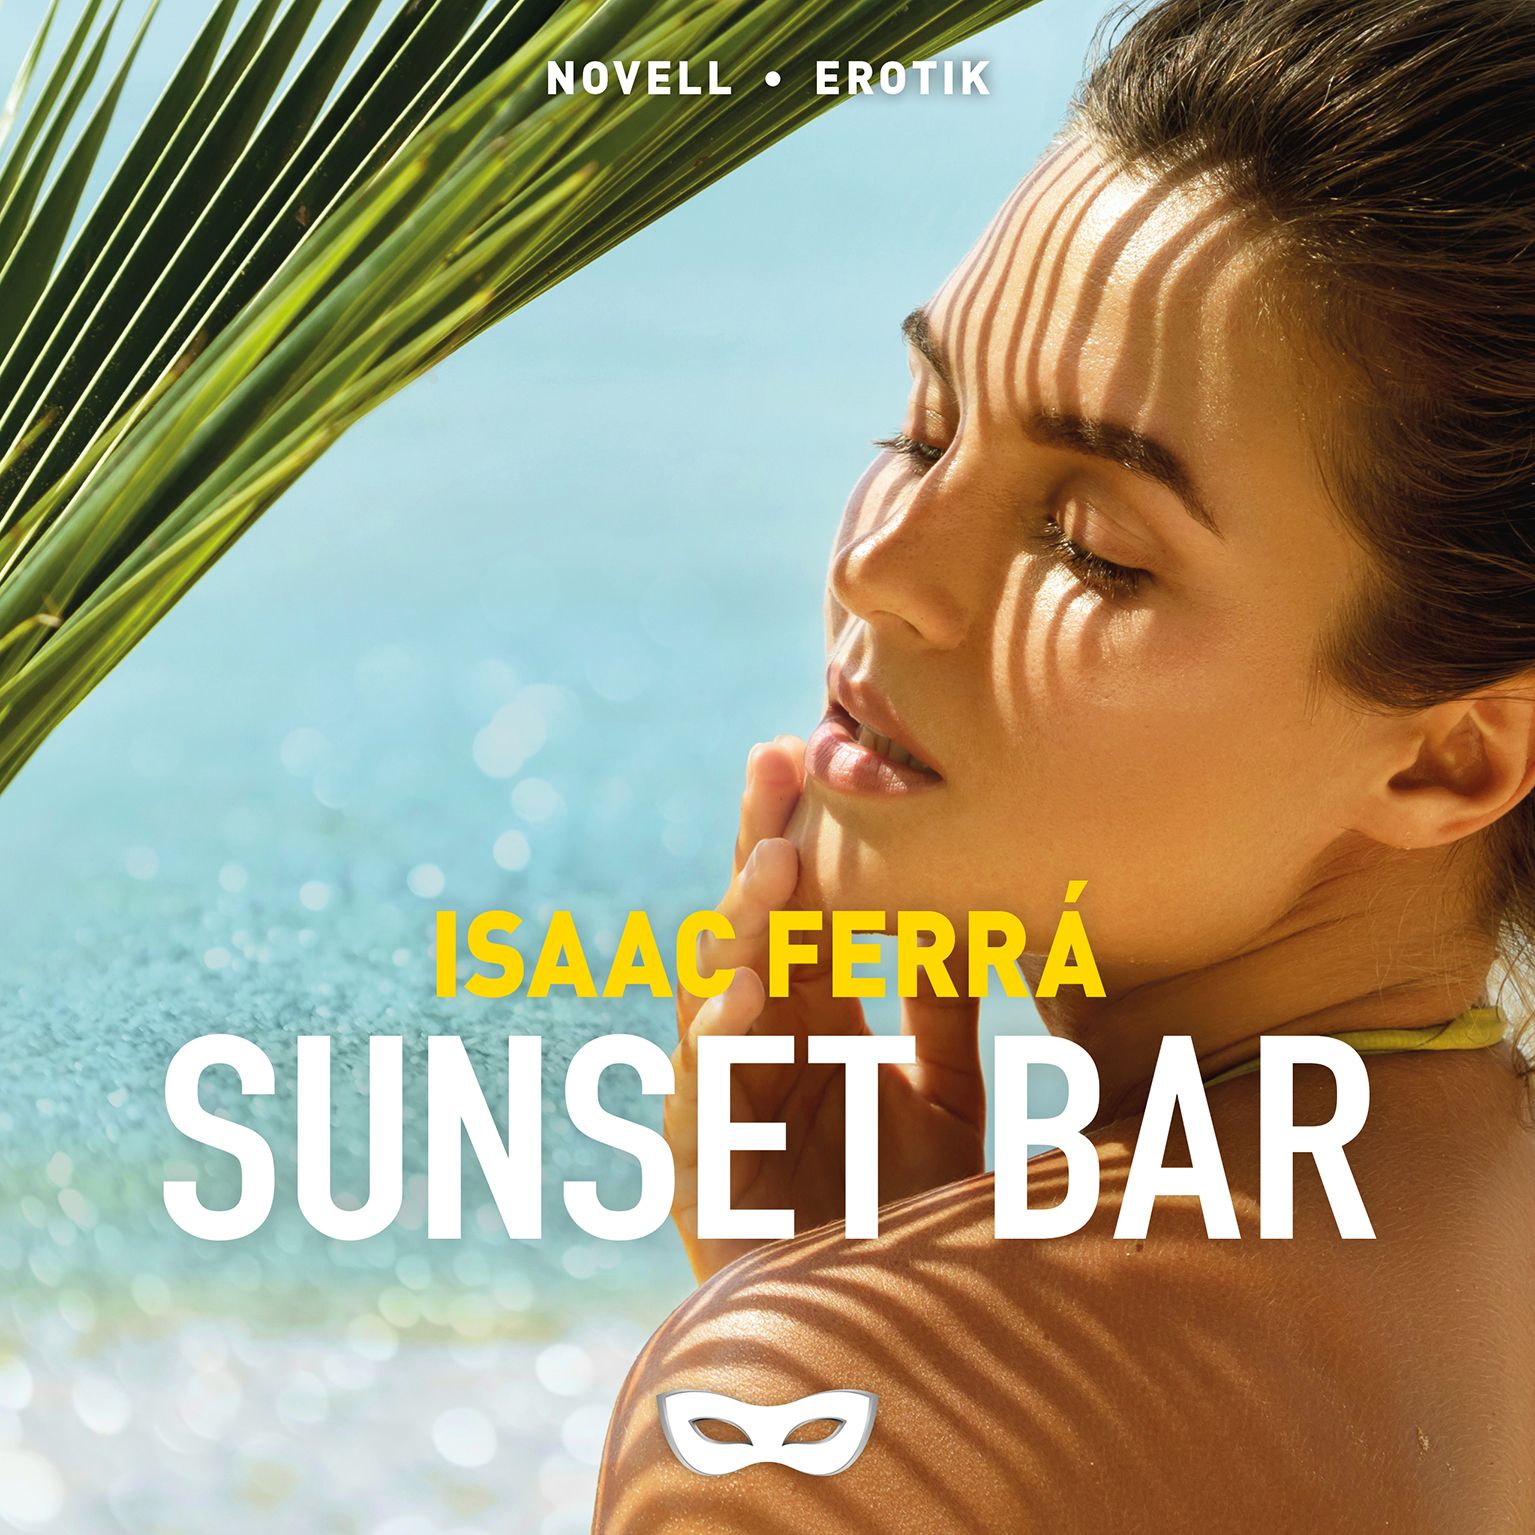 Sunset bar, lydbog af Isaac Ferrá